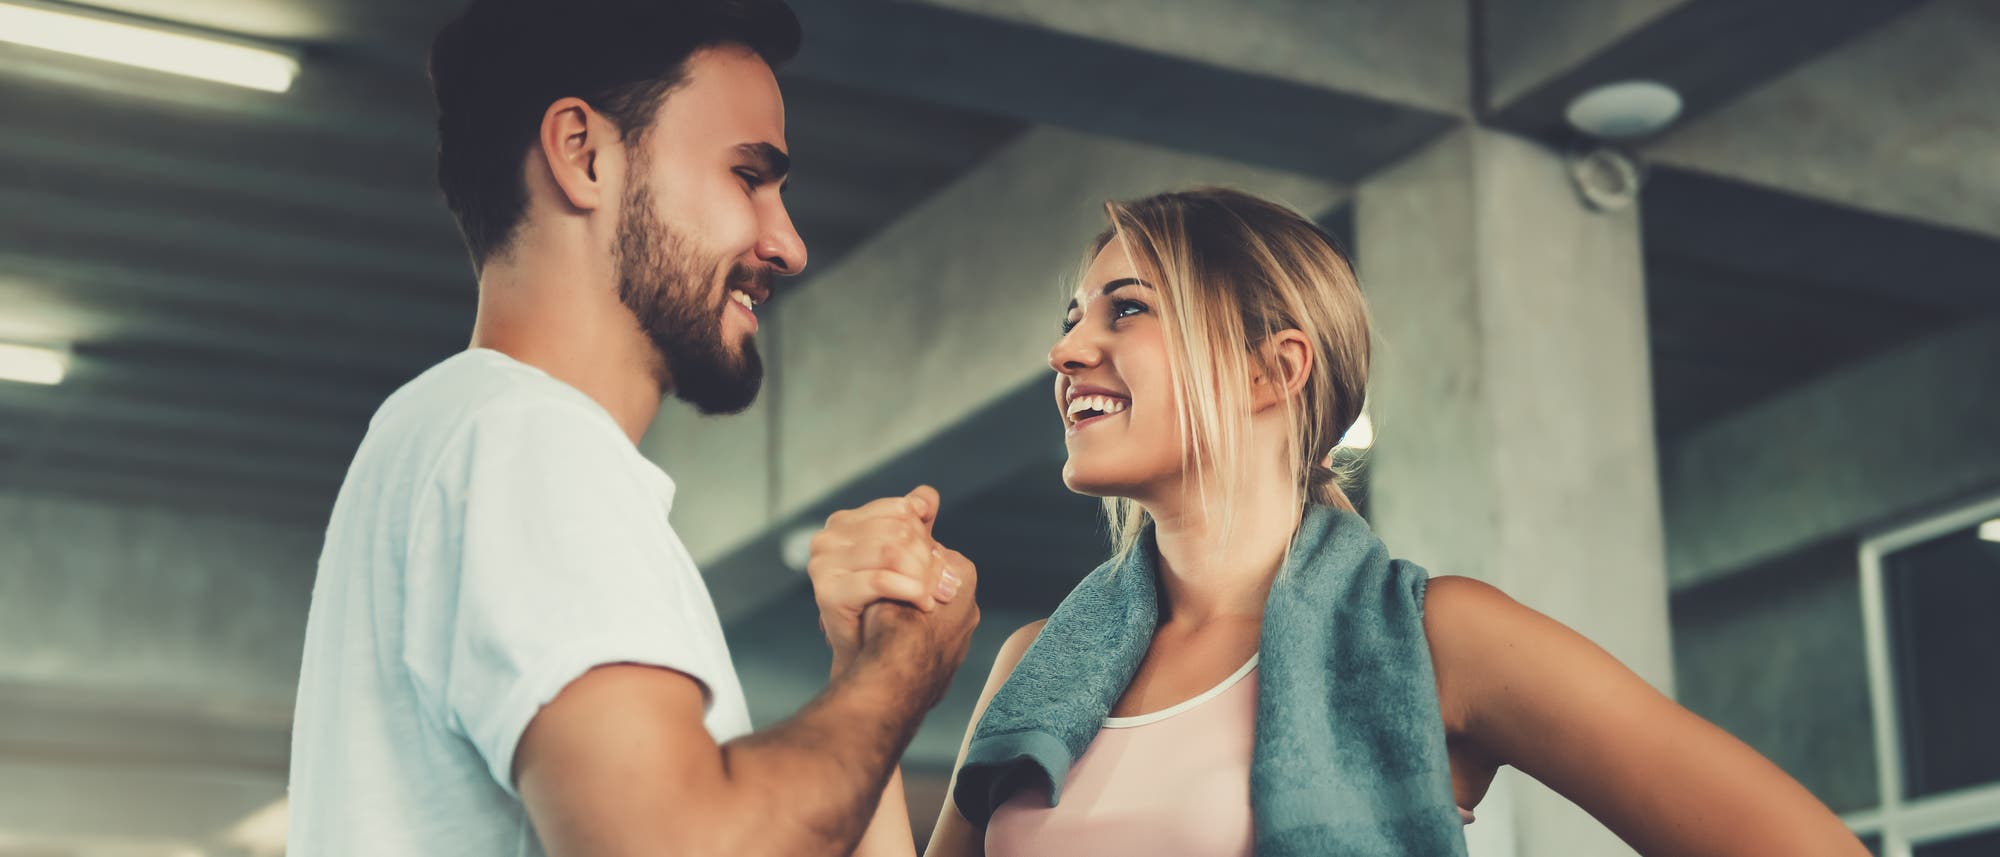 Eine Frau und ein Mann in Sportkleidung geben sich einen Handschlag und freuen sich.